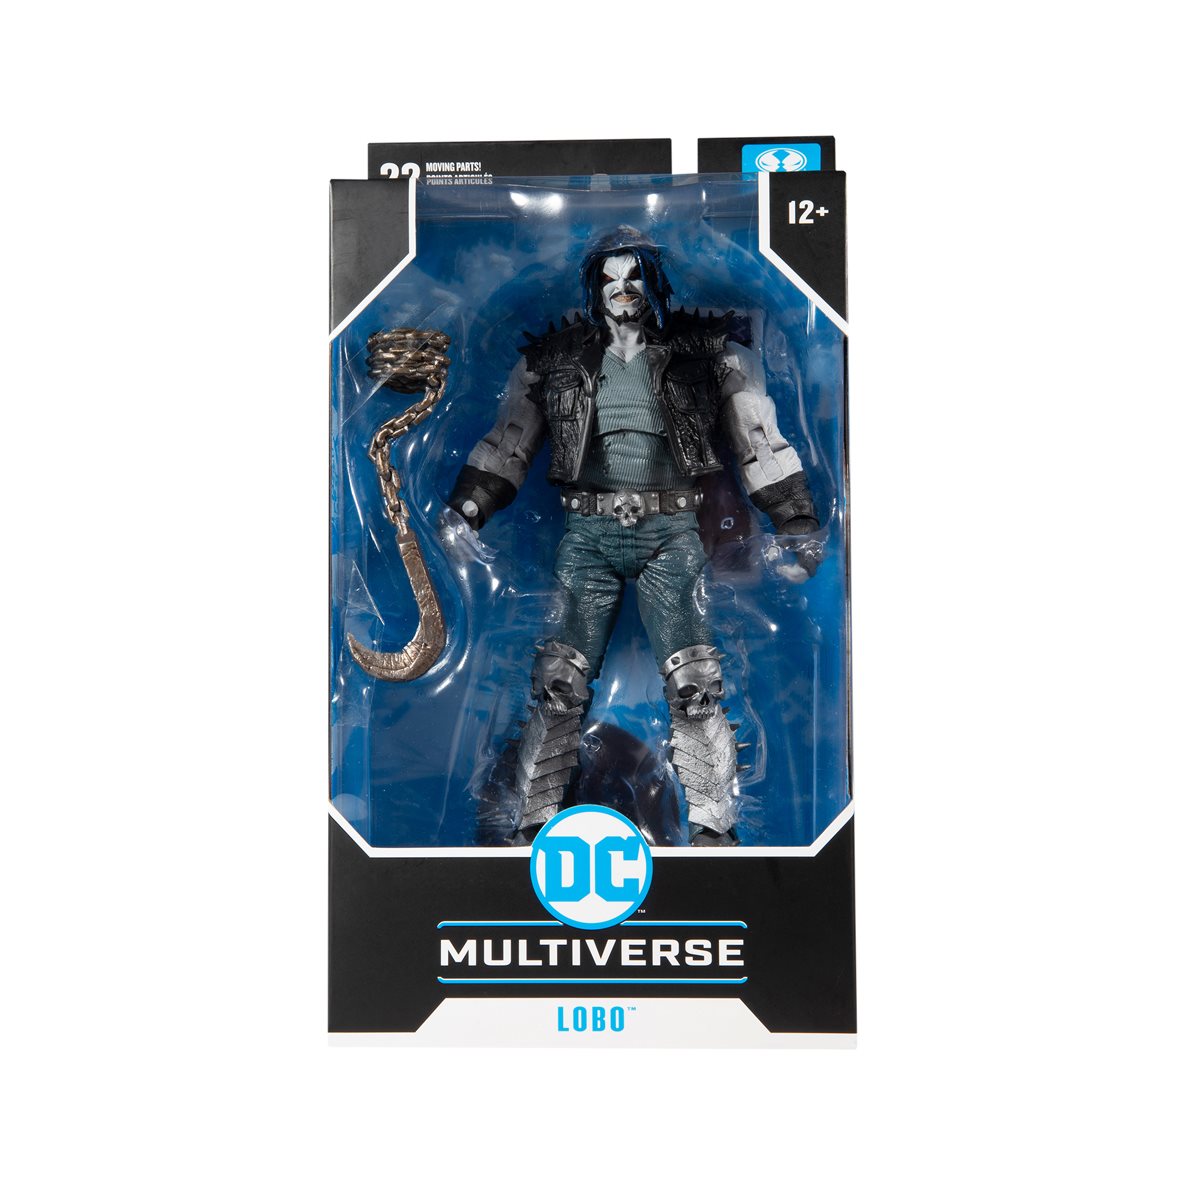 McFarlane Toys Dc Multiverse Lobo